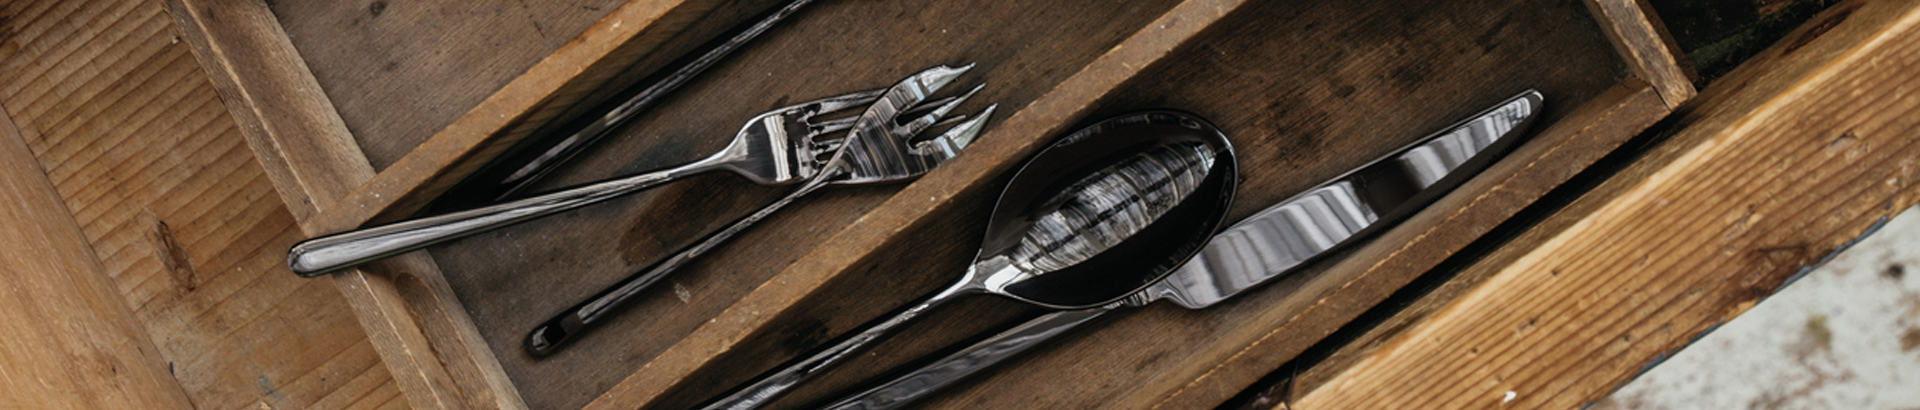 Single cutlery pieces